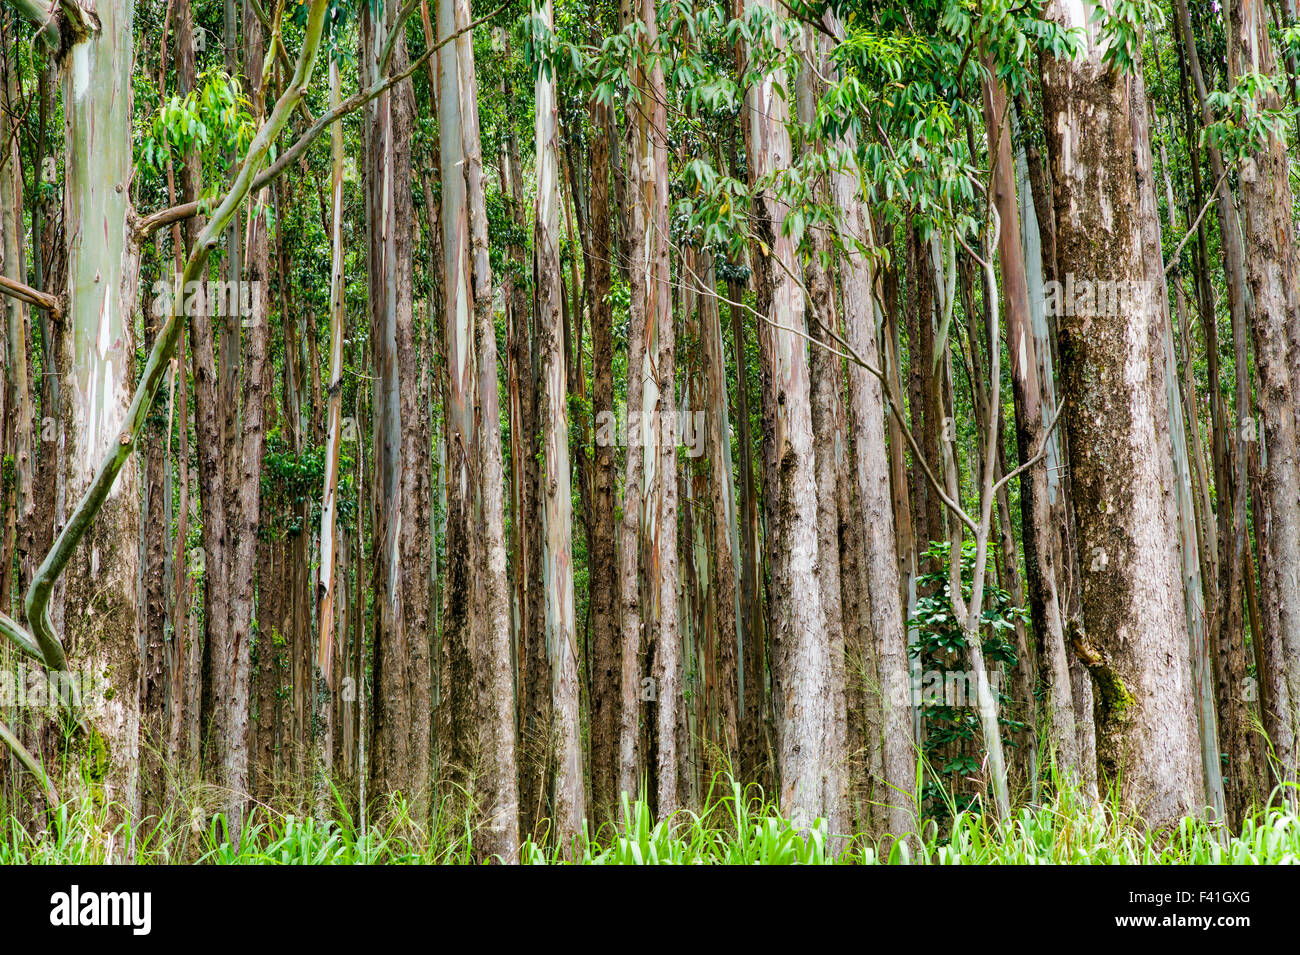 Grands peuplements d'eucalyptus ; Eucalyptus grandis ; canne à sucre ; des terres autrefois le long de la côte Hamakua ; Grande Île d'Hawai'i Banque D'Images